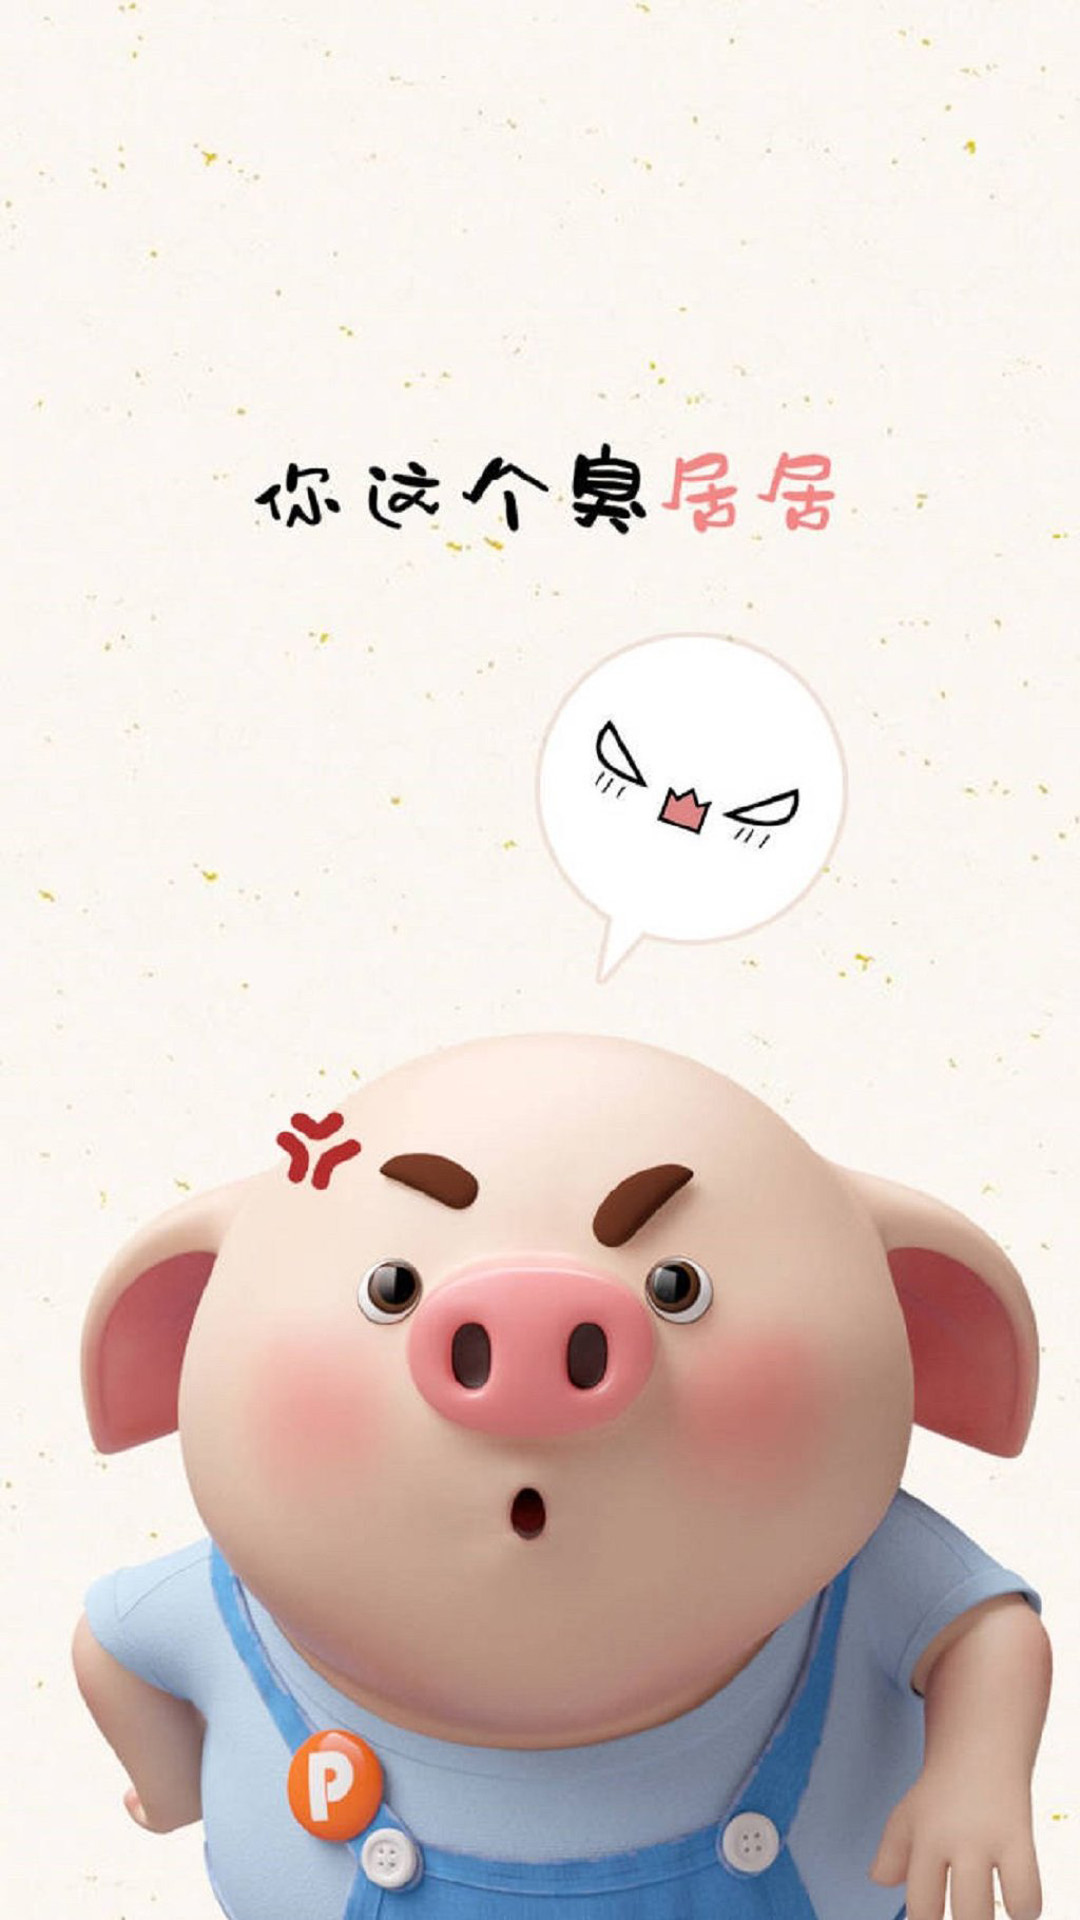 apk小游戏2019猪年可爱卡通小猪图片手机壁纸安卓手机壁纸高清截图7